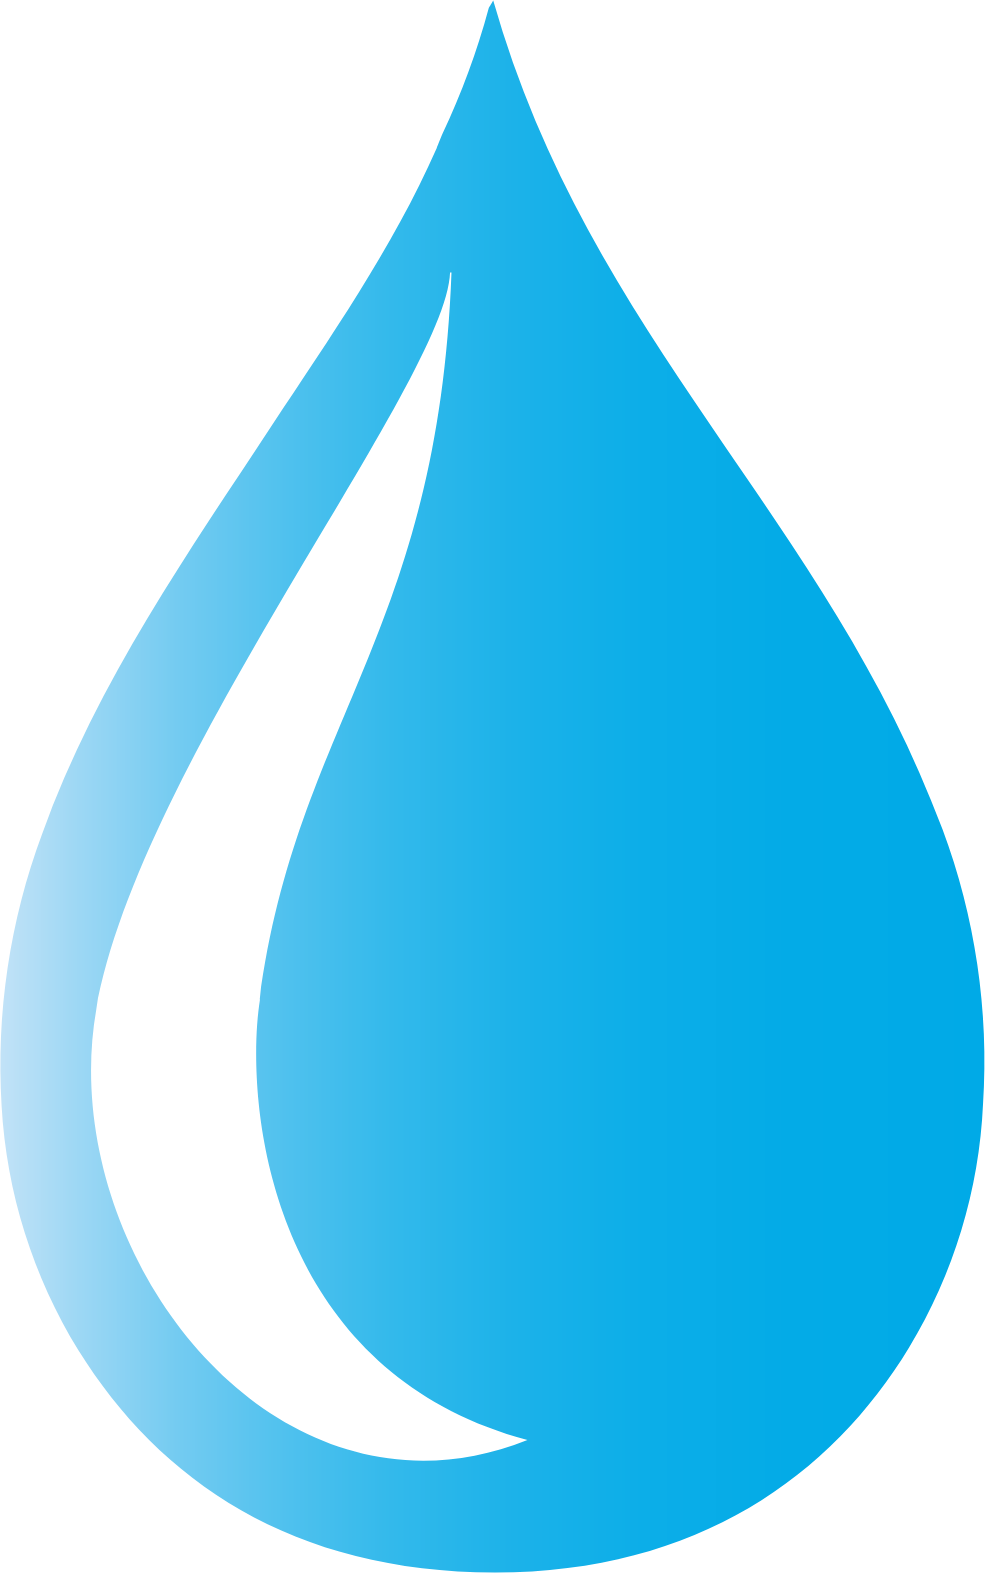 ProPhase Labs logo (transparent PNG)